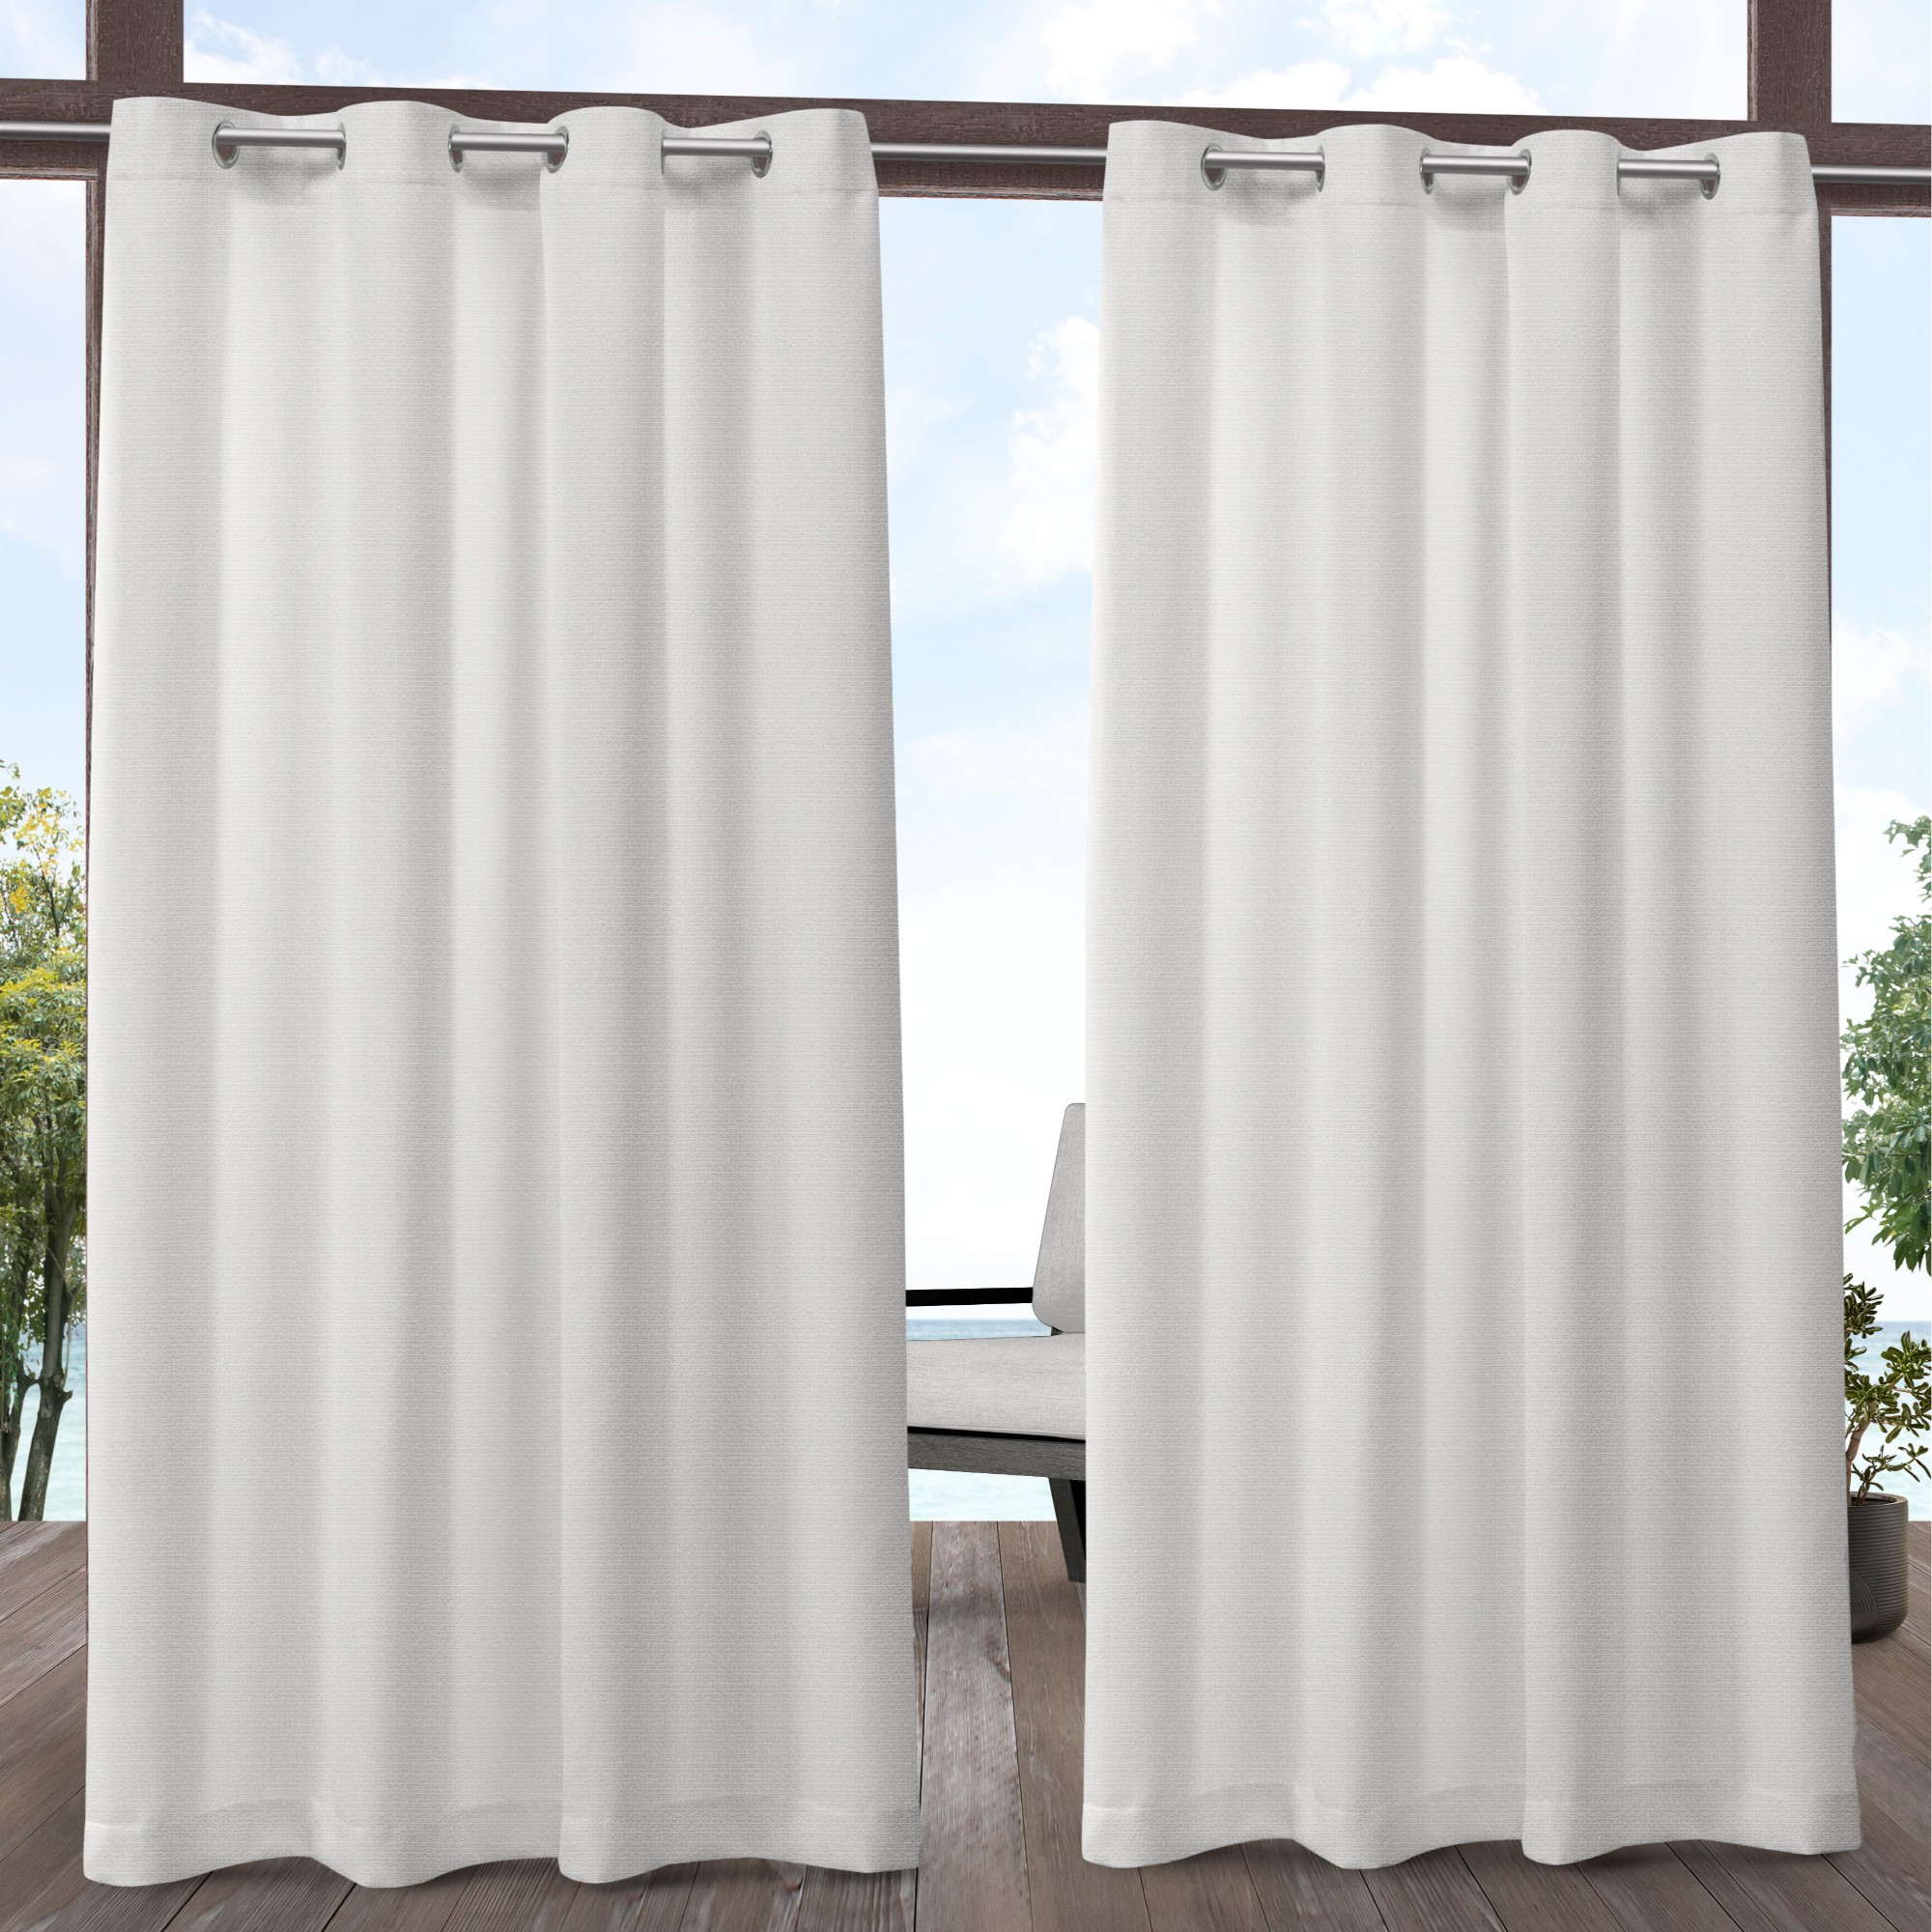 Exclusive Home Aztec Indoor/Outdoor Grommet Top Curtain Panel Pair, 54"x84", White - image 1 of 6